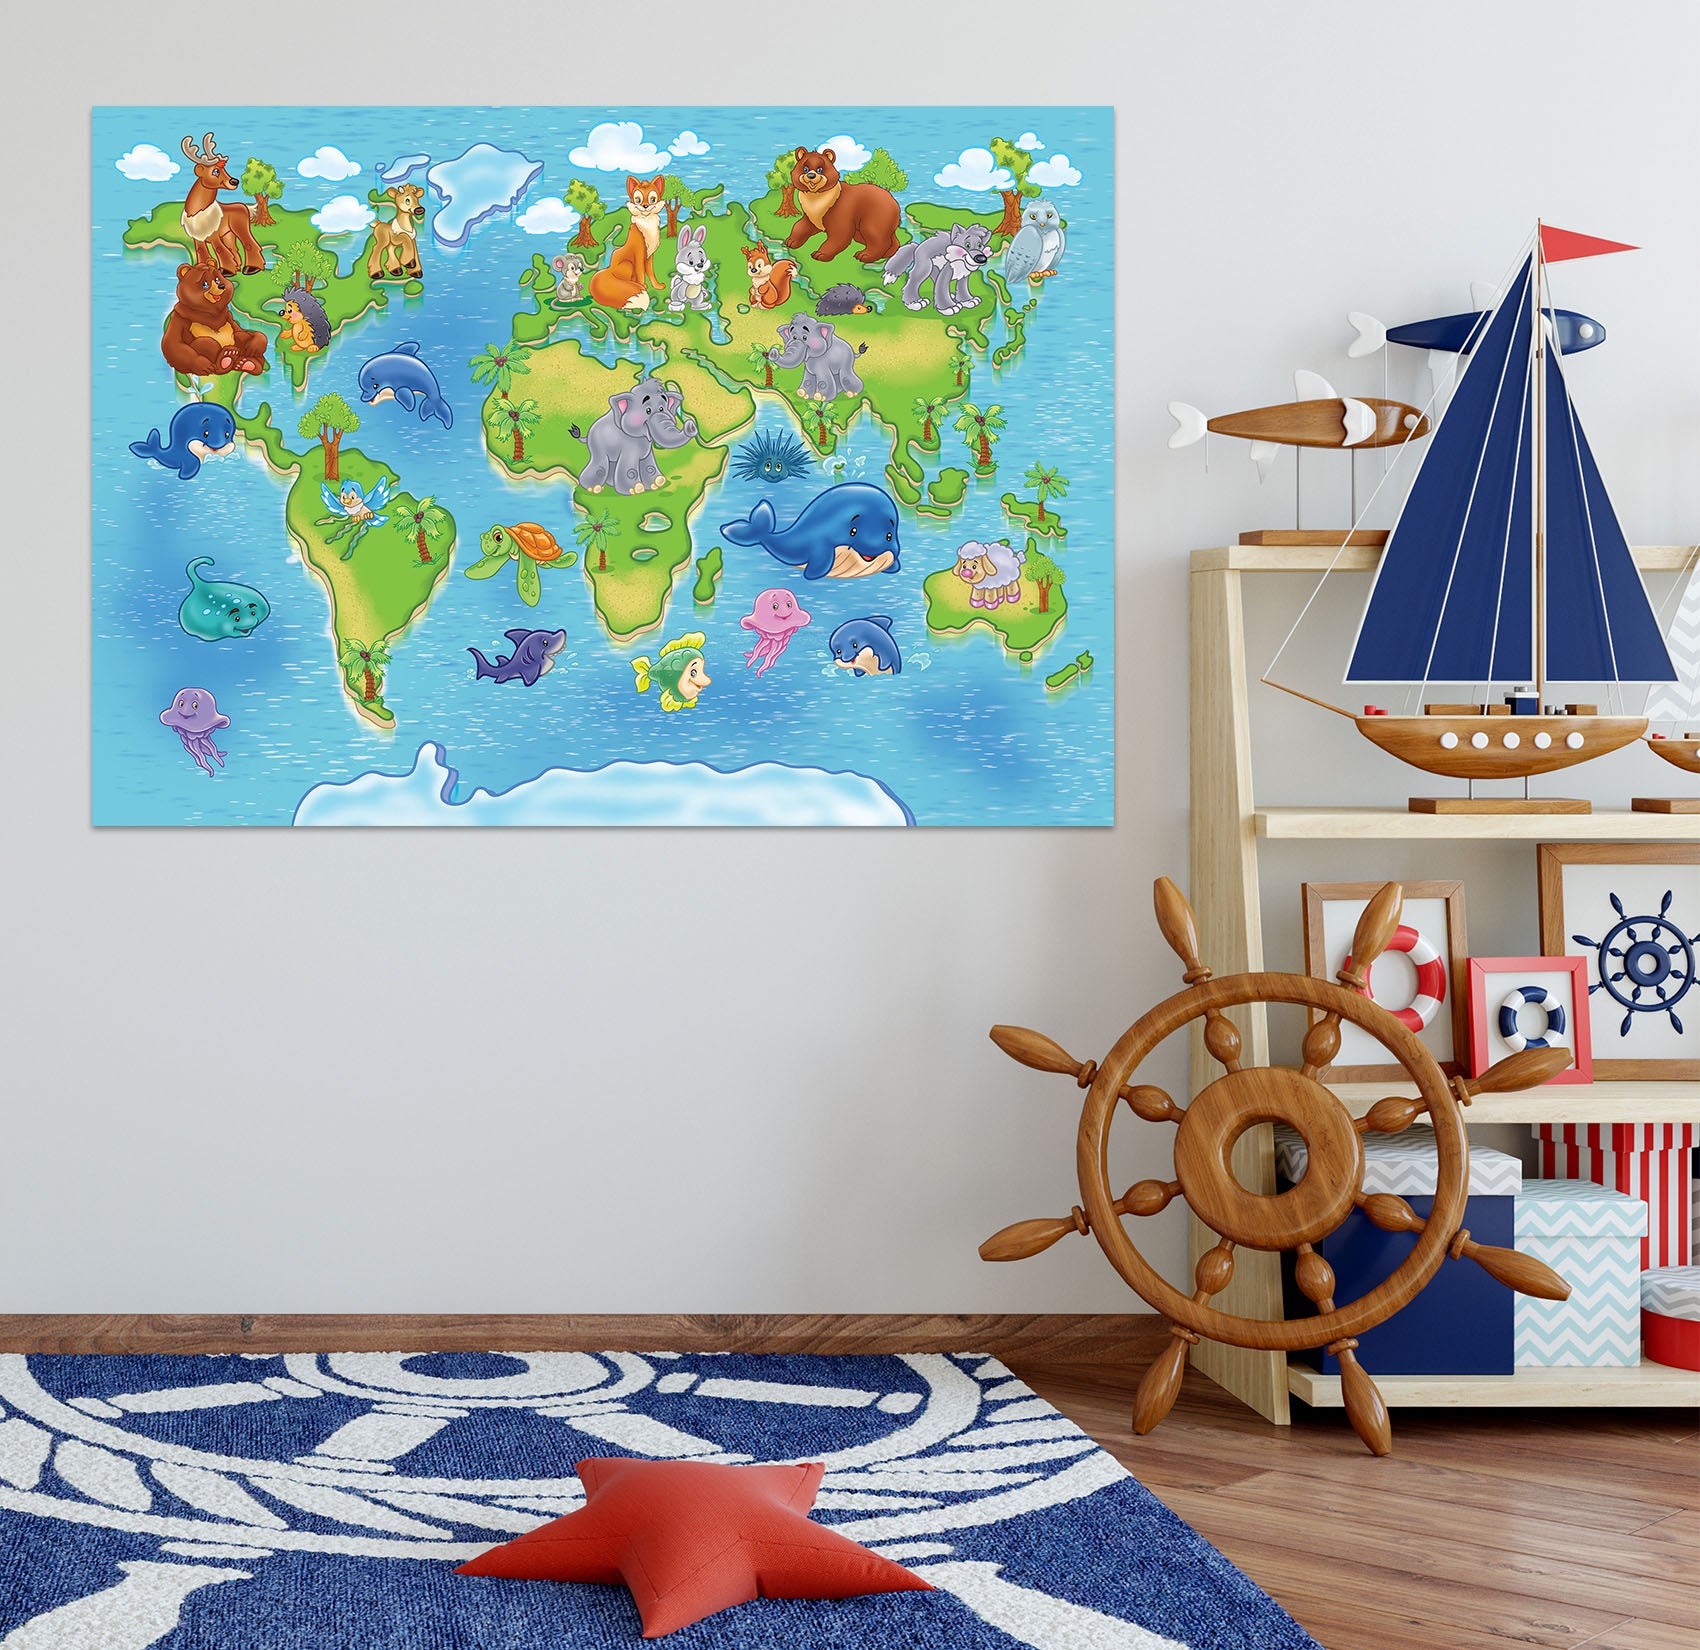 3D Whale Island 201 World Map Wall Sticker